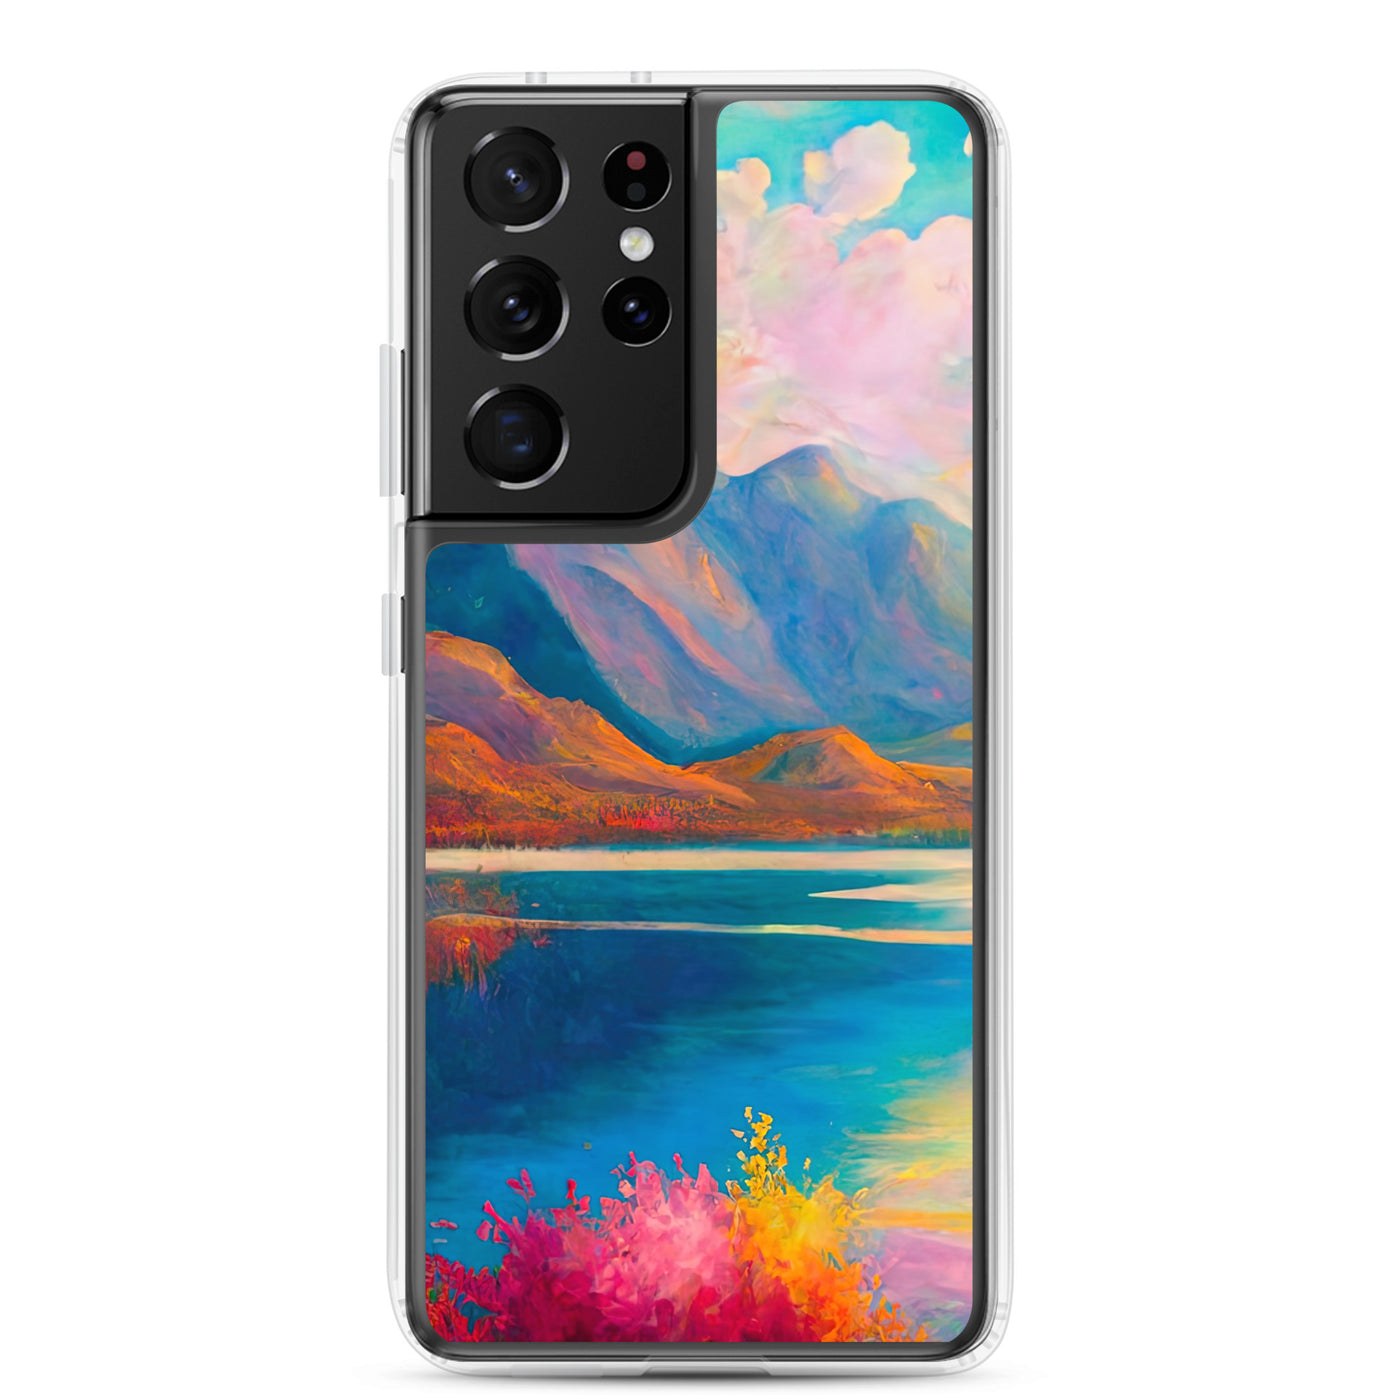 Berglandschaft und Bergsee - Farbige Ölmalerei - Samsung Schutzhülle (durchsichtig) berge xxx Samsung Galaxy S21 Ultra